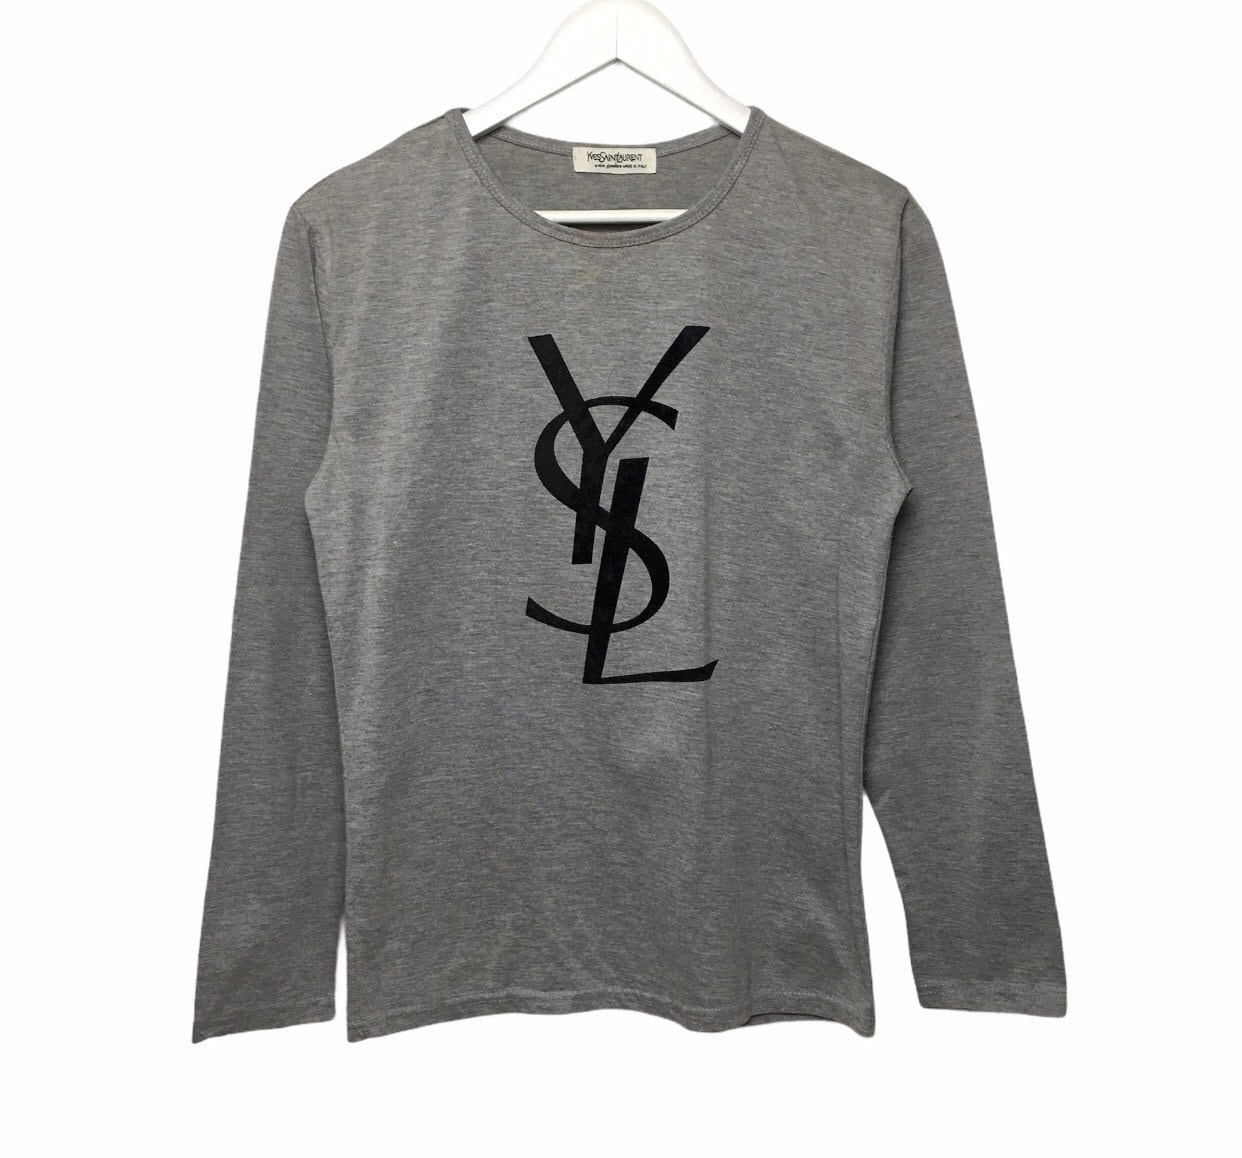 YSL Yves Saint Laurent T-Shirts for Men